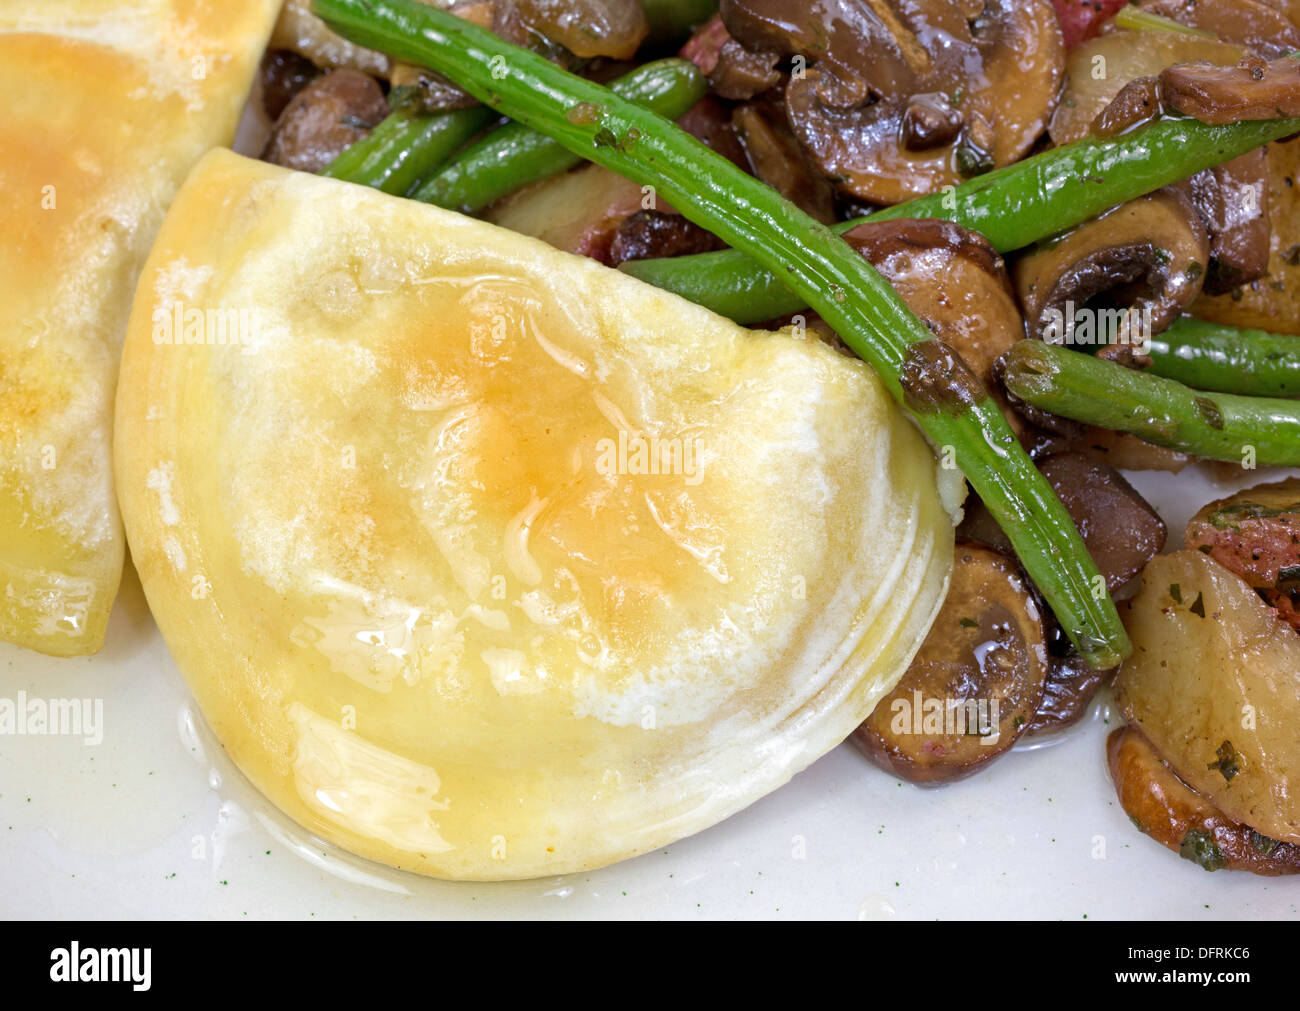 Une vue étroite d'un repas cuit des pierogies avec haricots verts, champignons, oignons et pommes de terre rouge sur une assiette. Banque D'Images